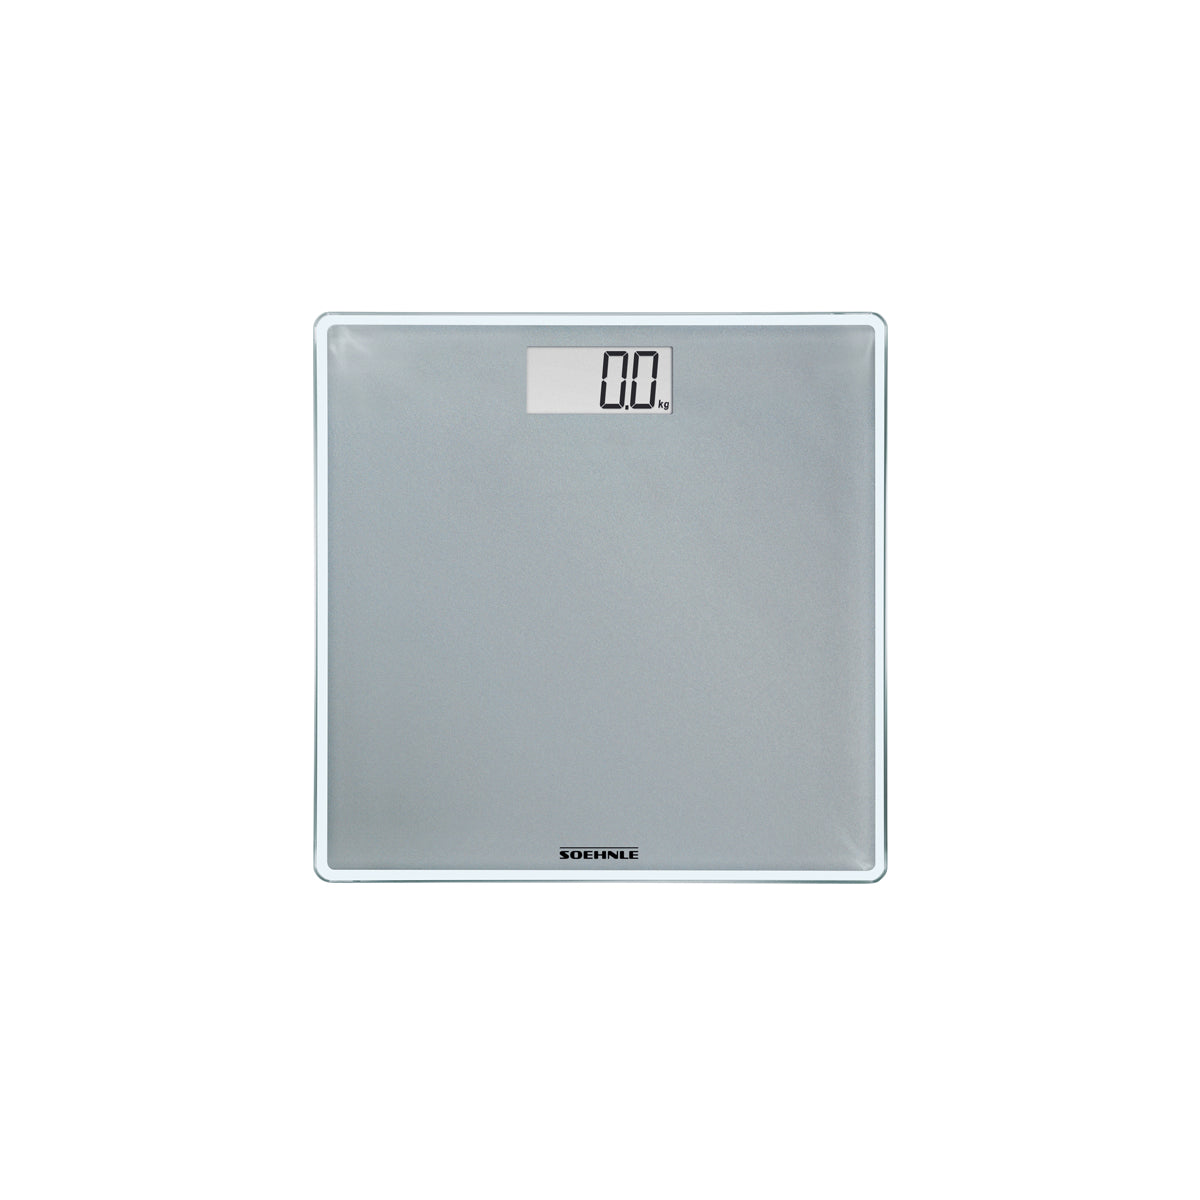 S63852 Soehnle Style Sense Compact 300 Silver Bathroom Scale 180kg Tomkin Australia Hospitality Supplies